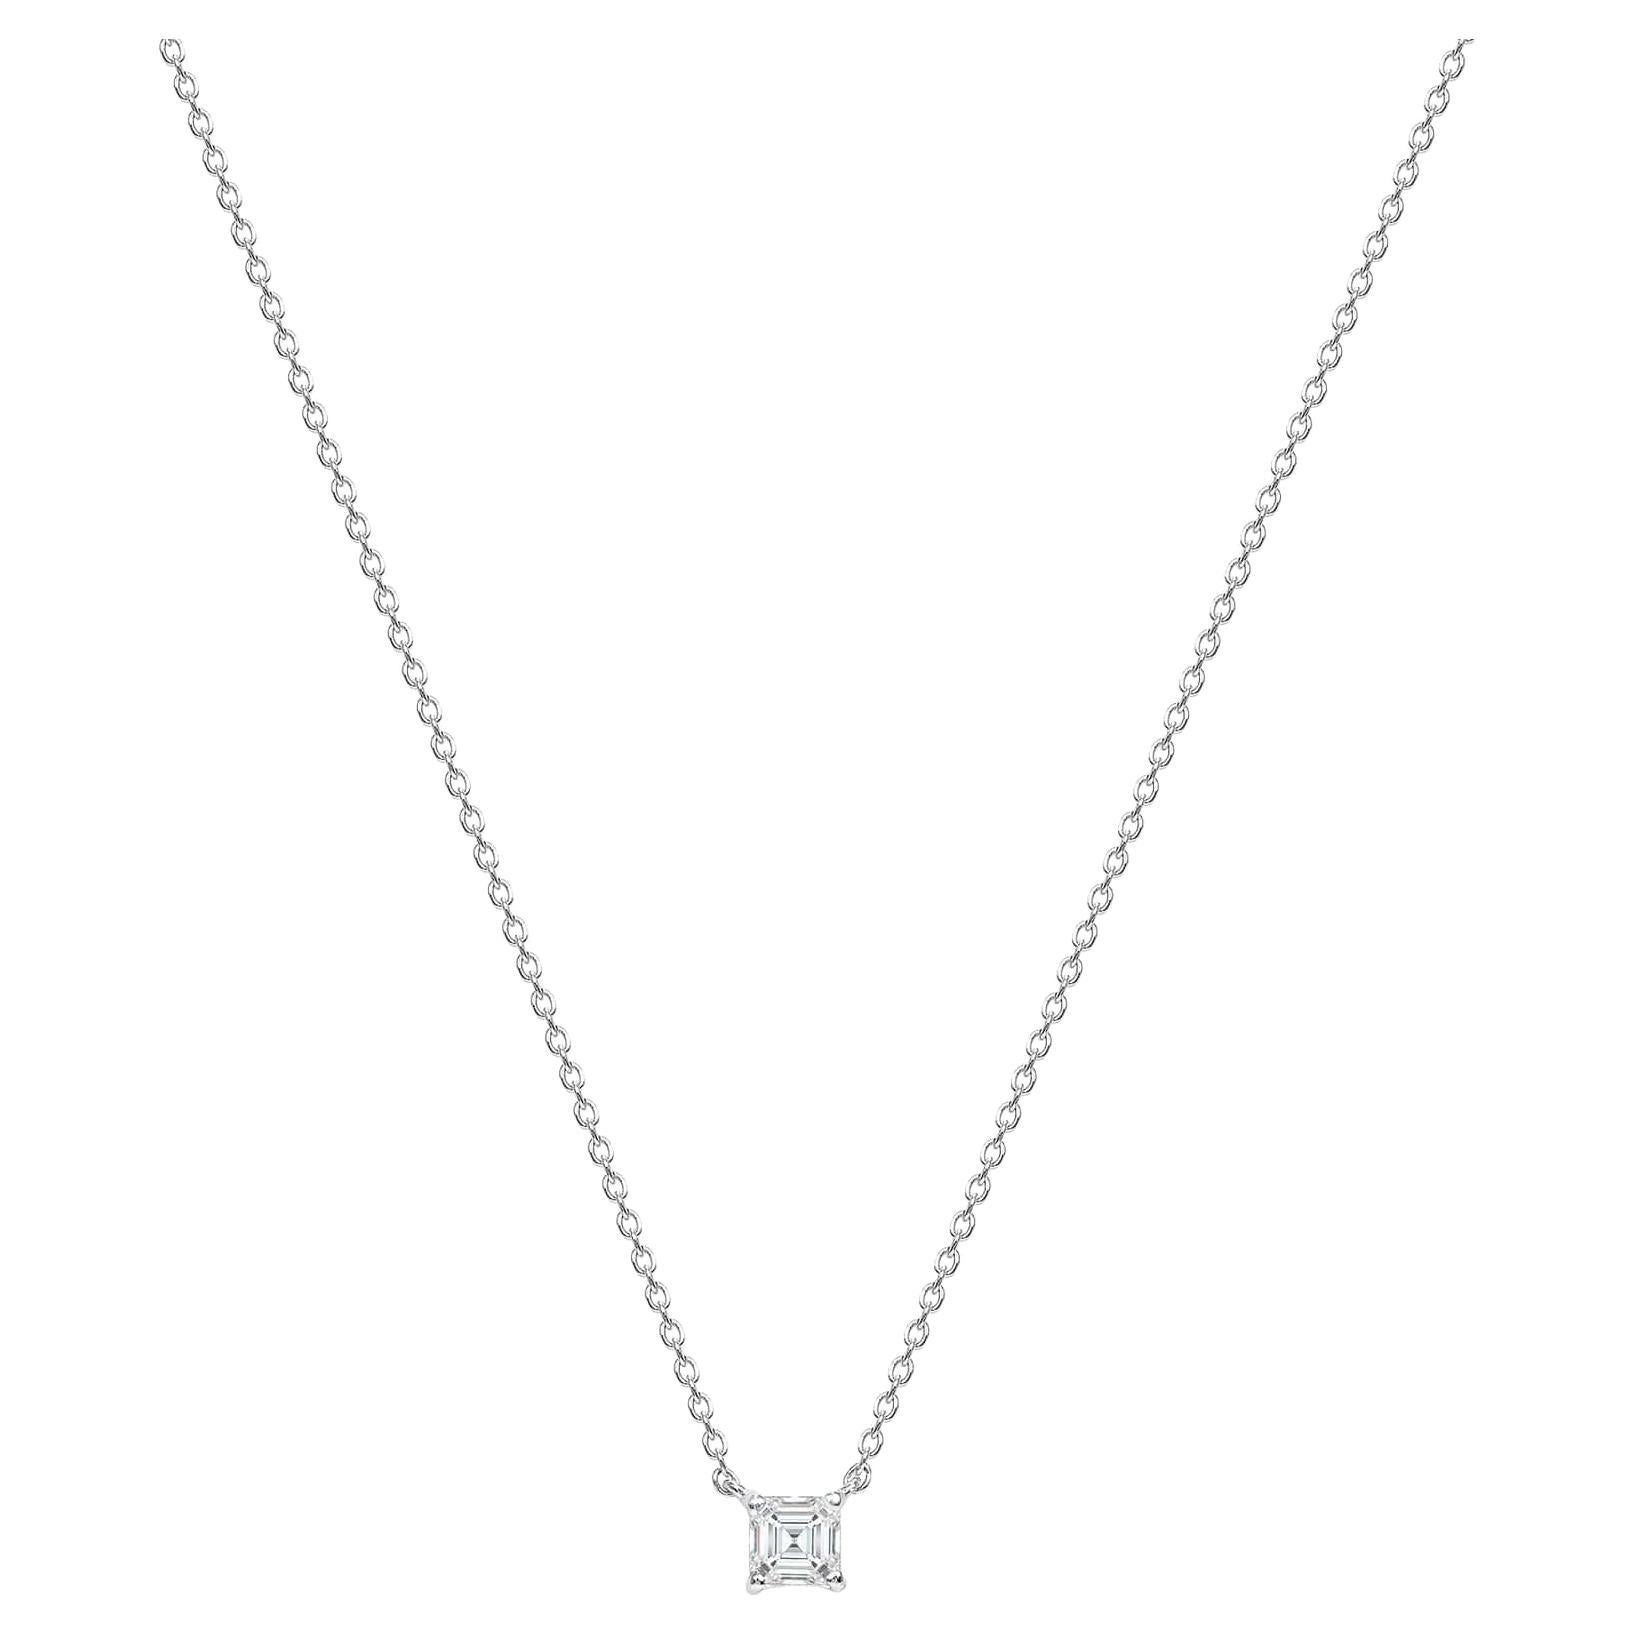 Finley's Diamond Asscher Cut Necklace